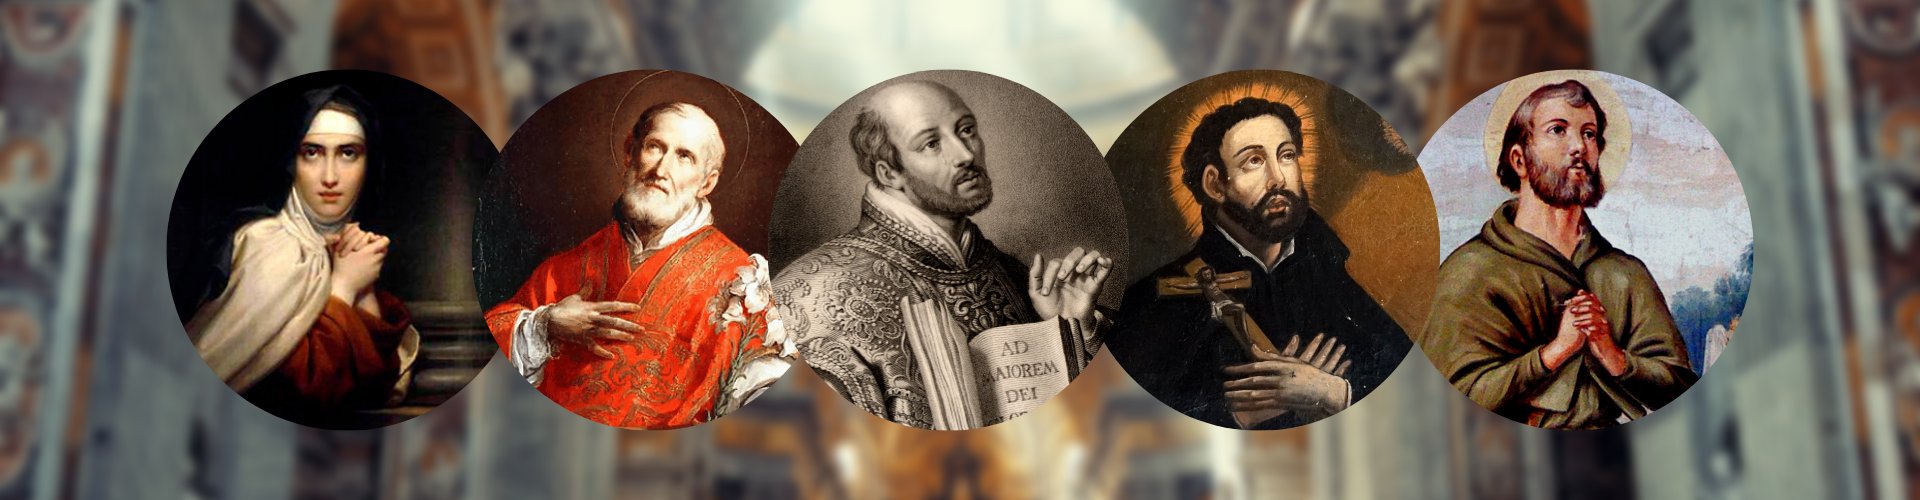 Les 5 saints du 12 mars 1622 © Twitter @Ignatius_500